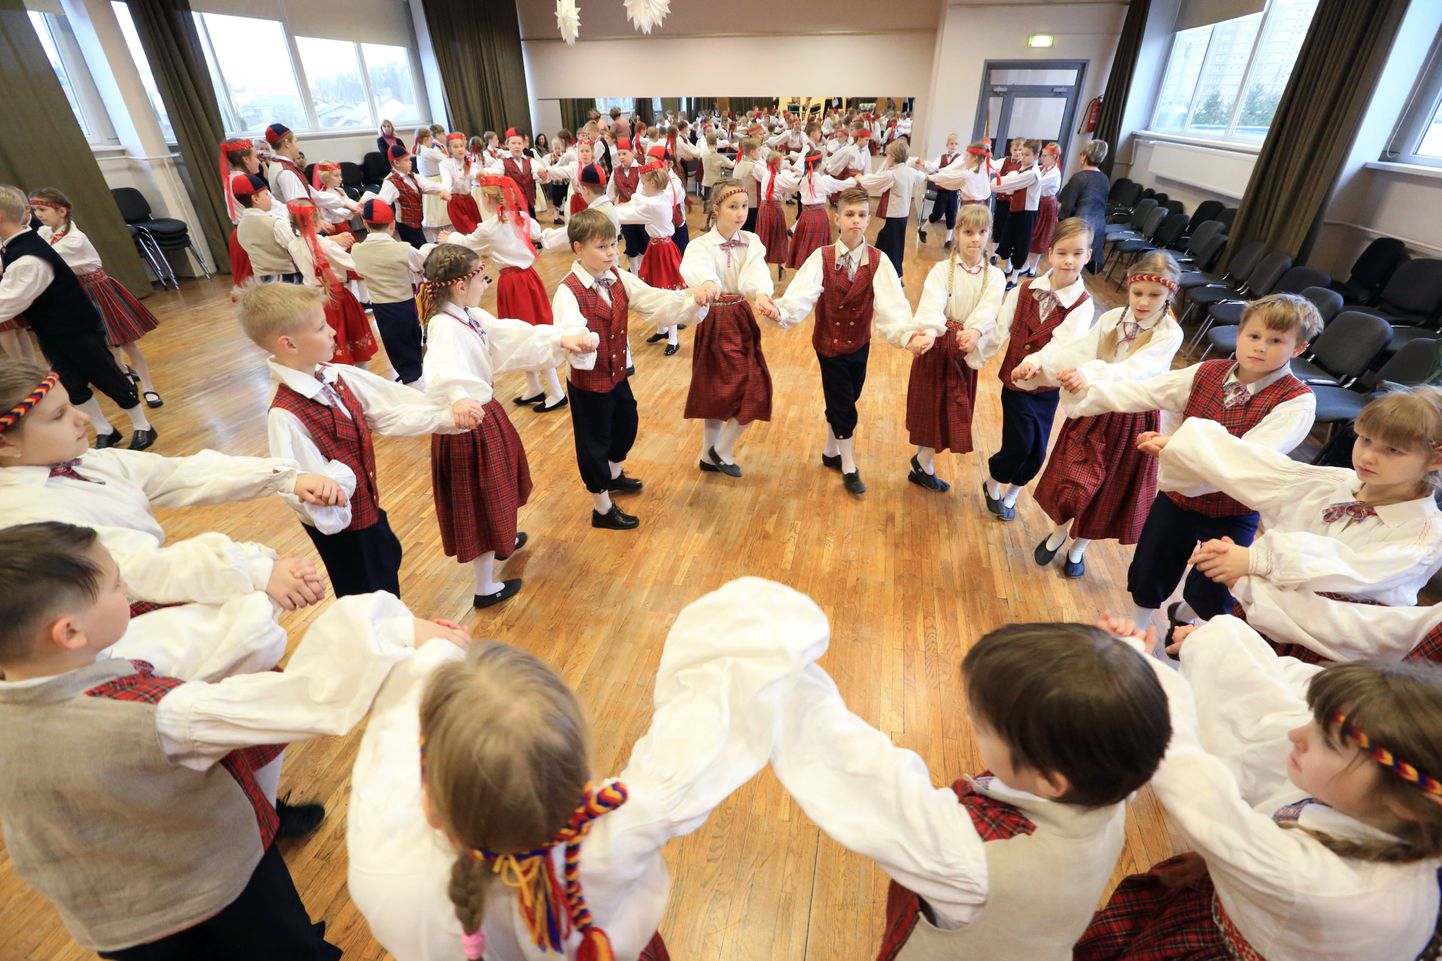 Laste ja noorte tantsu- ja laulupeo tantsupeo eelproov Tartu Hansa koolis.
Pildil 3. ja 4. klasside õpilased.